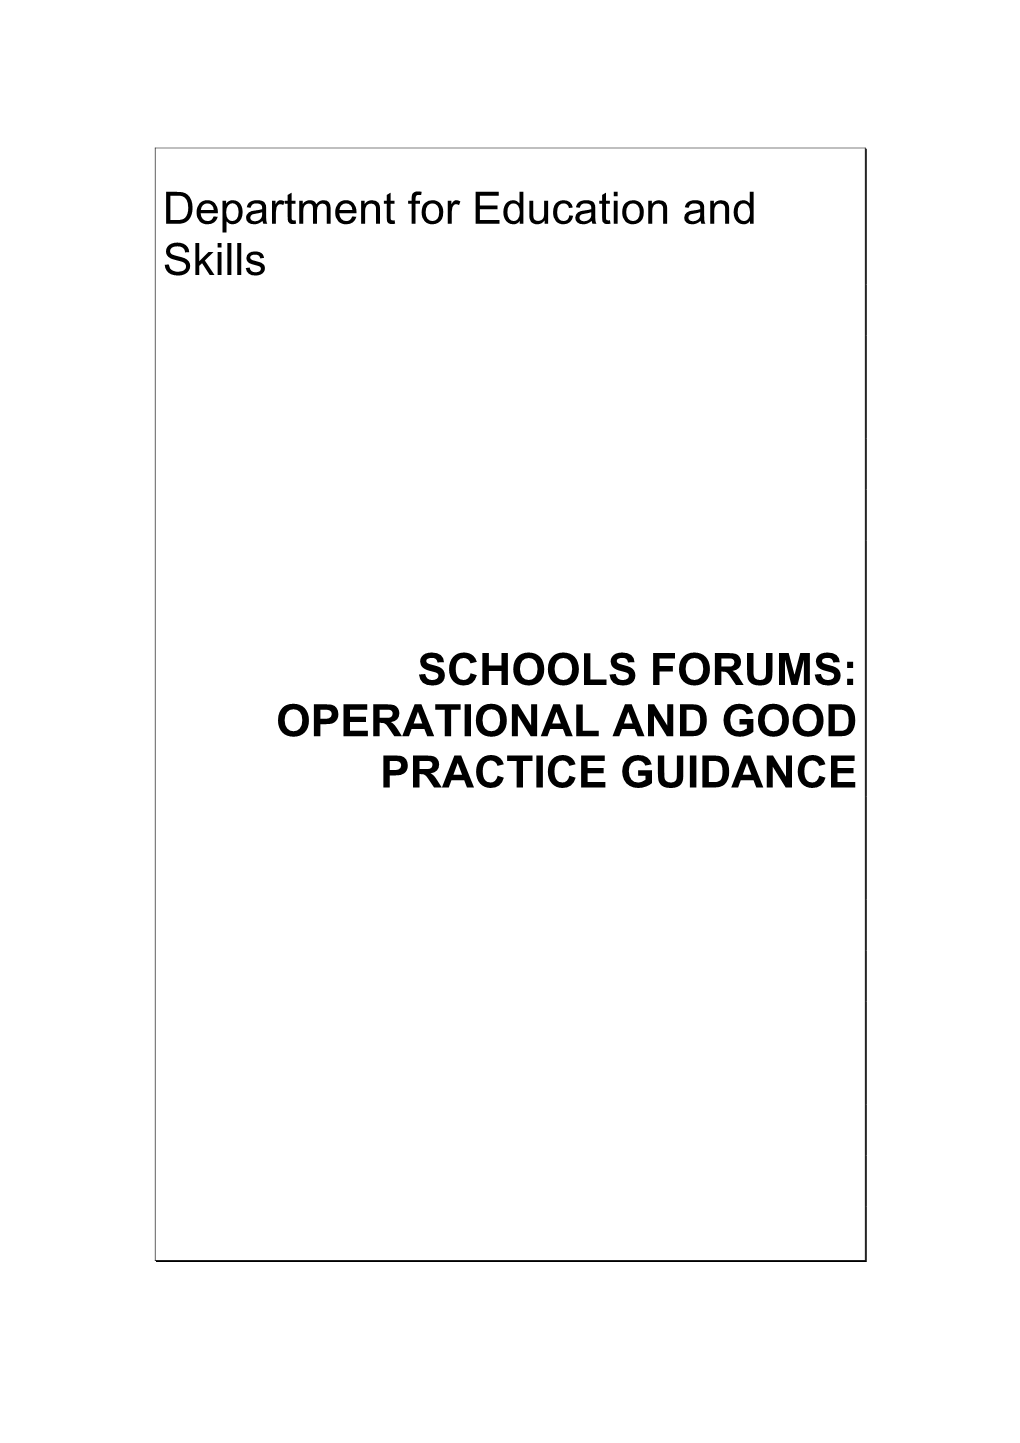 Schools Forum Good Practice Guide: Draft 1